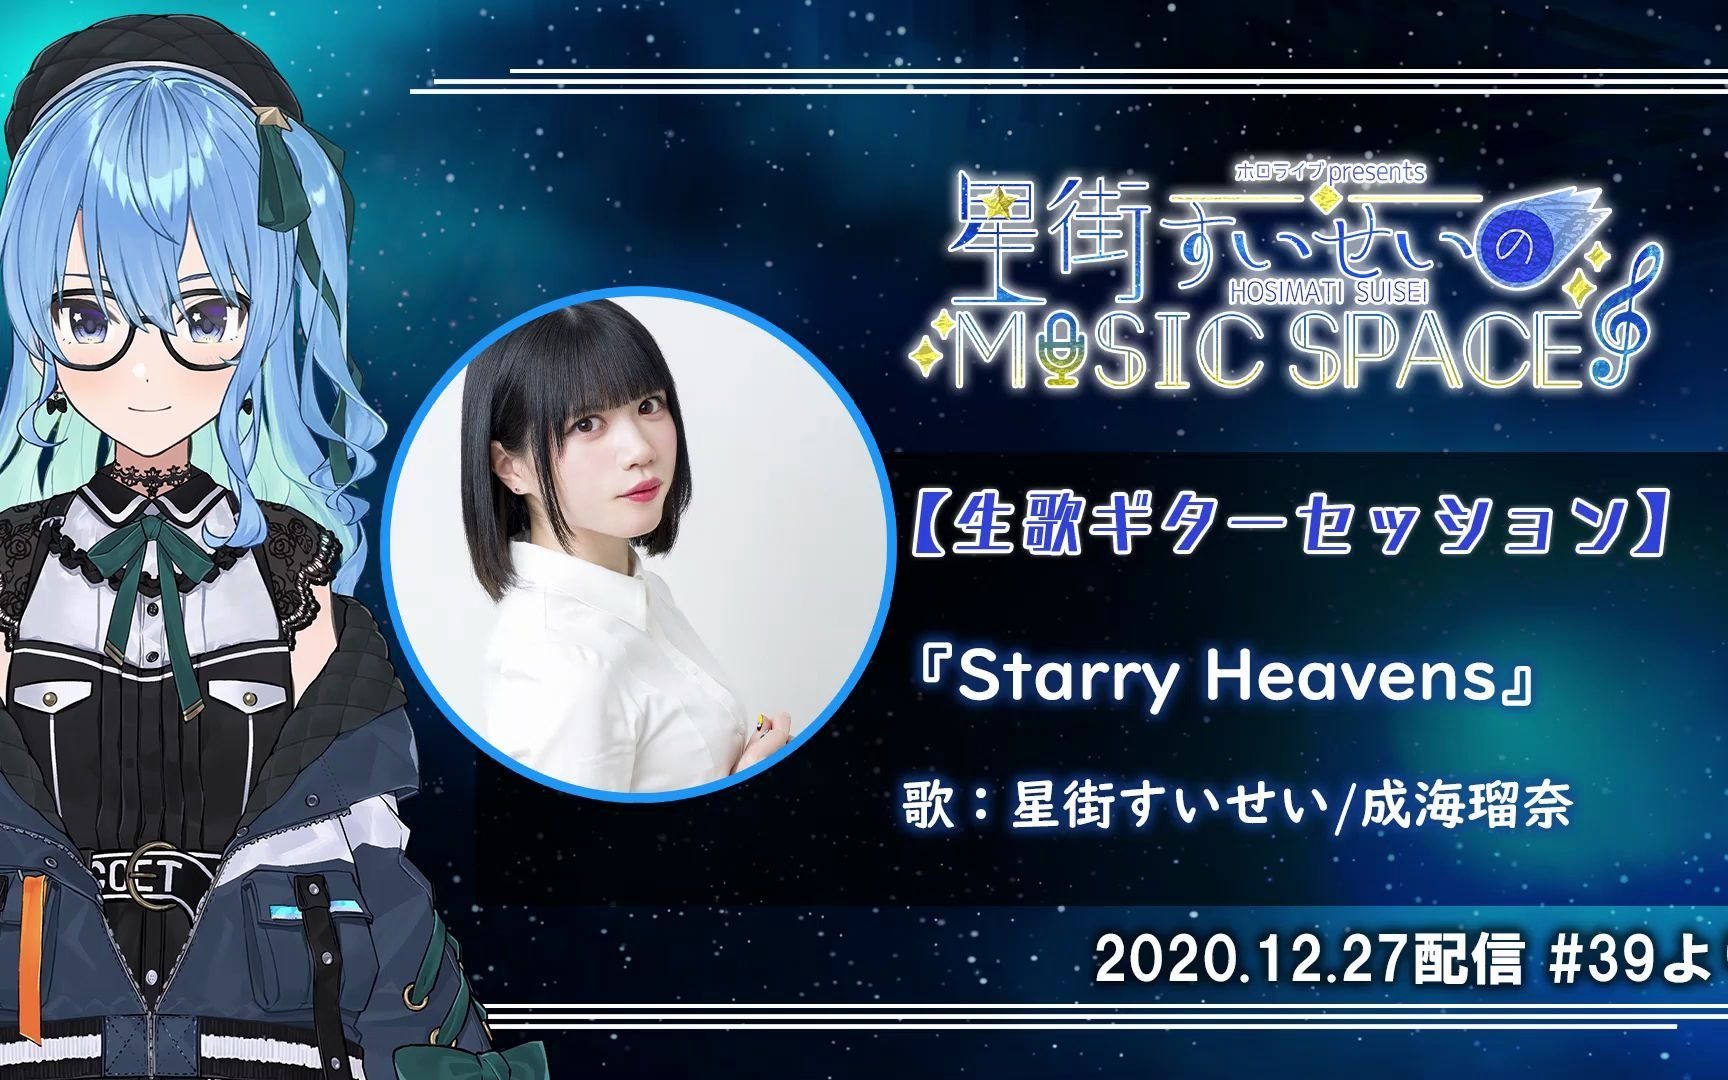 【成海瑠奈/星街すいせい】starry heavens